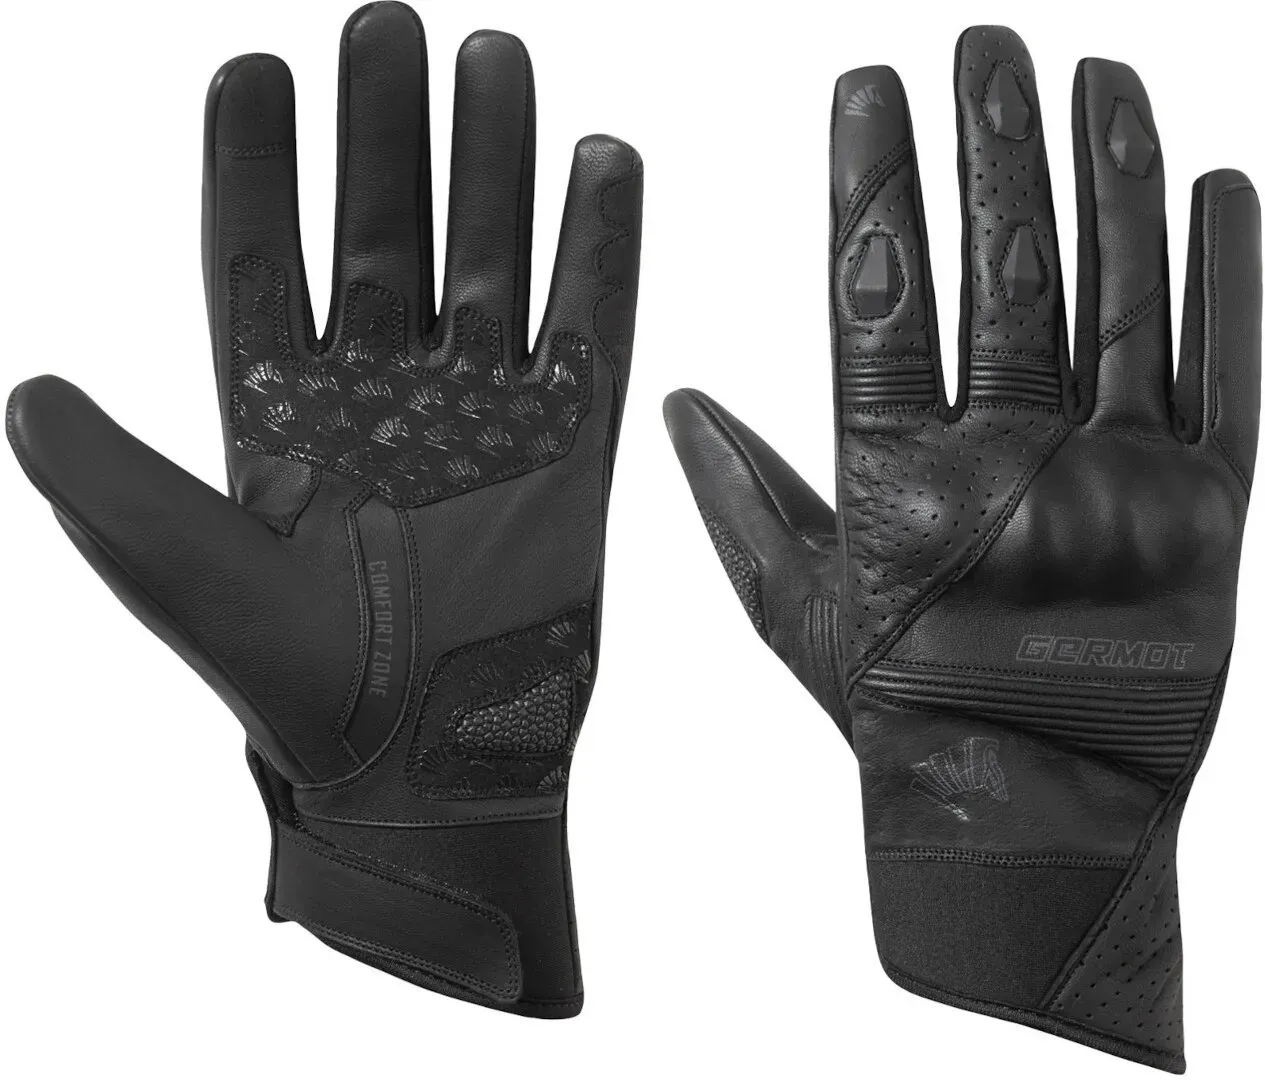 Germot Thompson Motorfiets handschoenen, zwart, 2XL